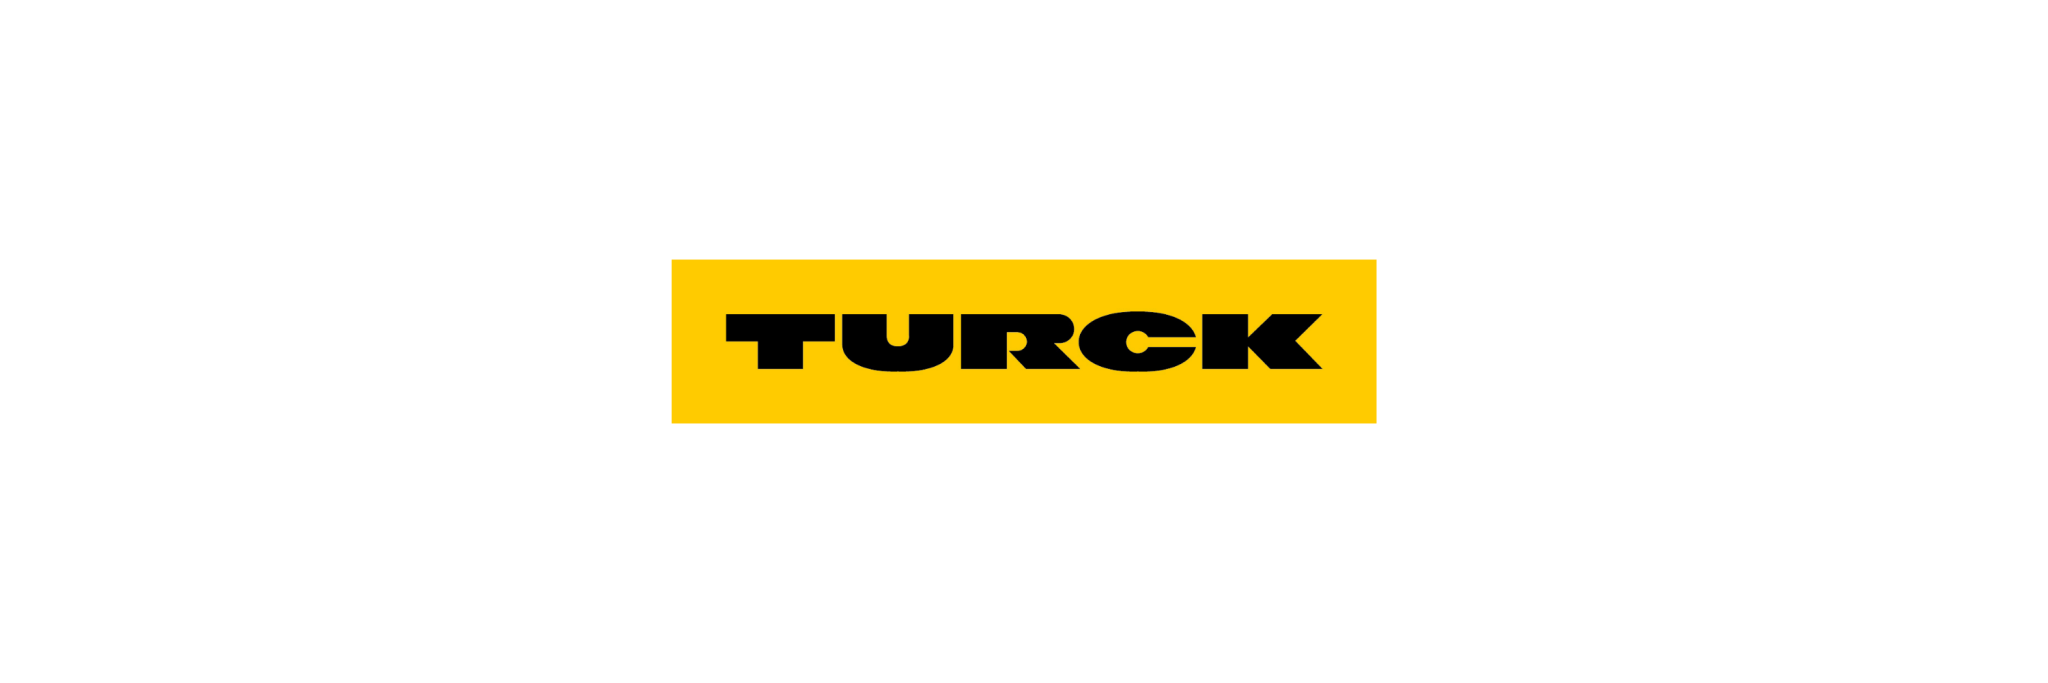 TURCK - Klenk Maschinenhandel